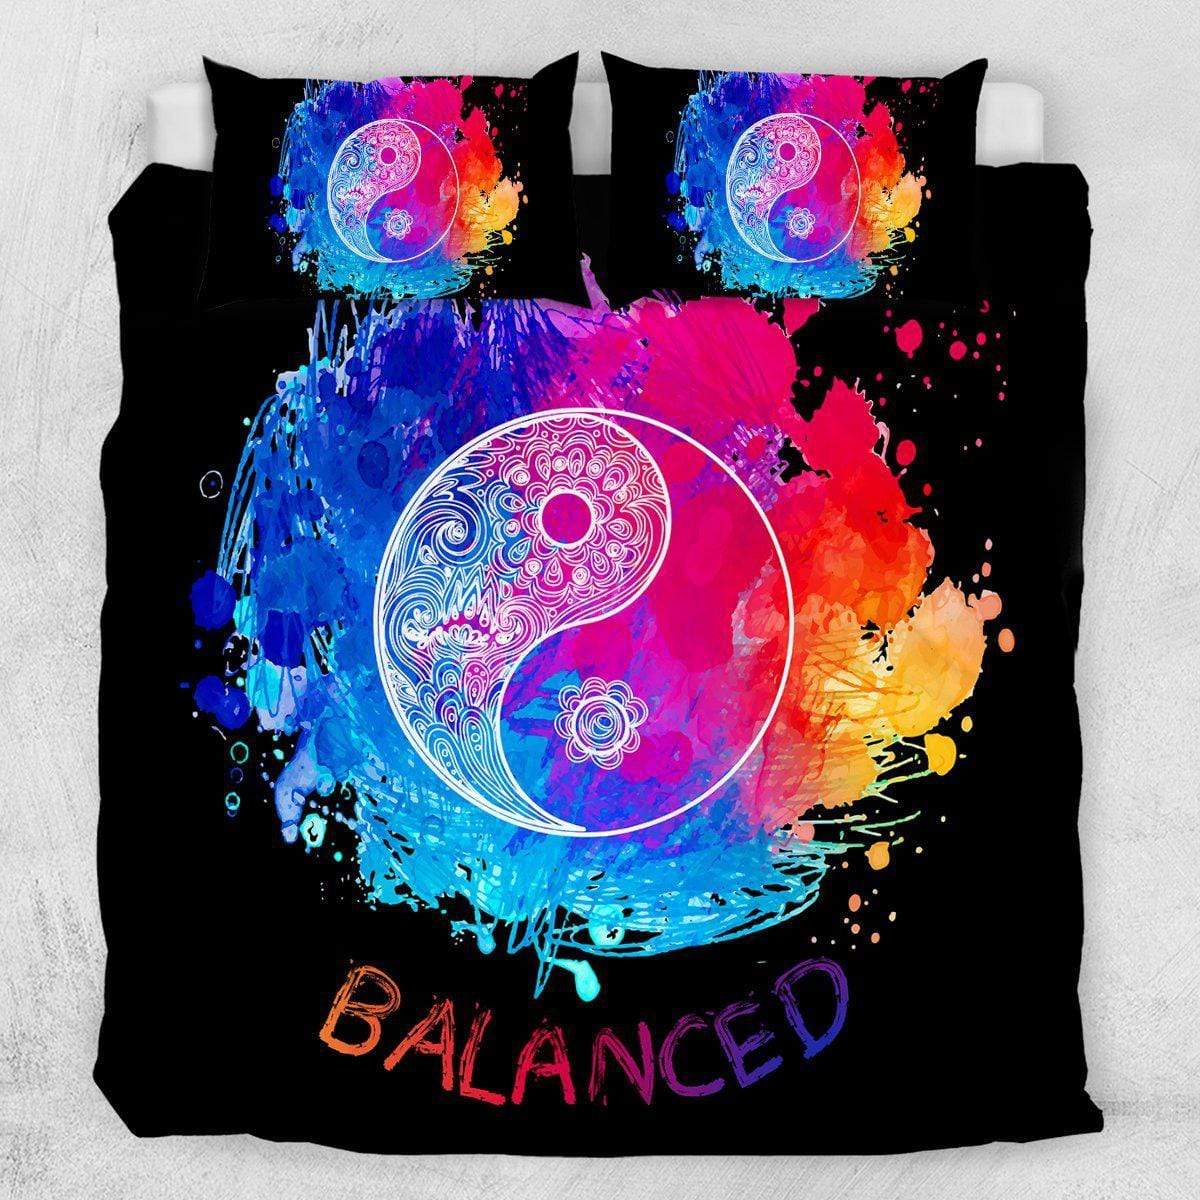 Yin Yang - Balanced Yin Yang - Balanced Quilt Cover Set